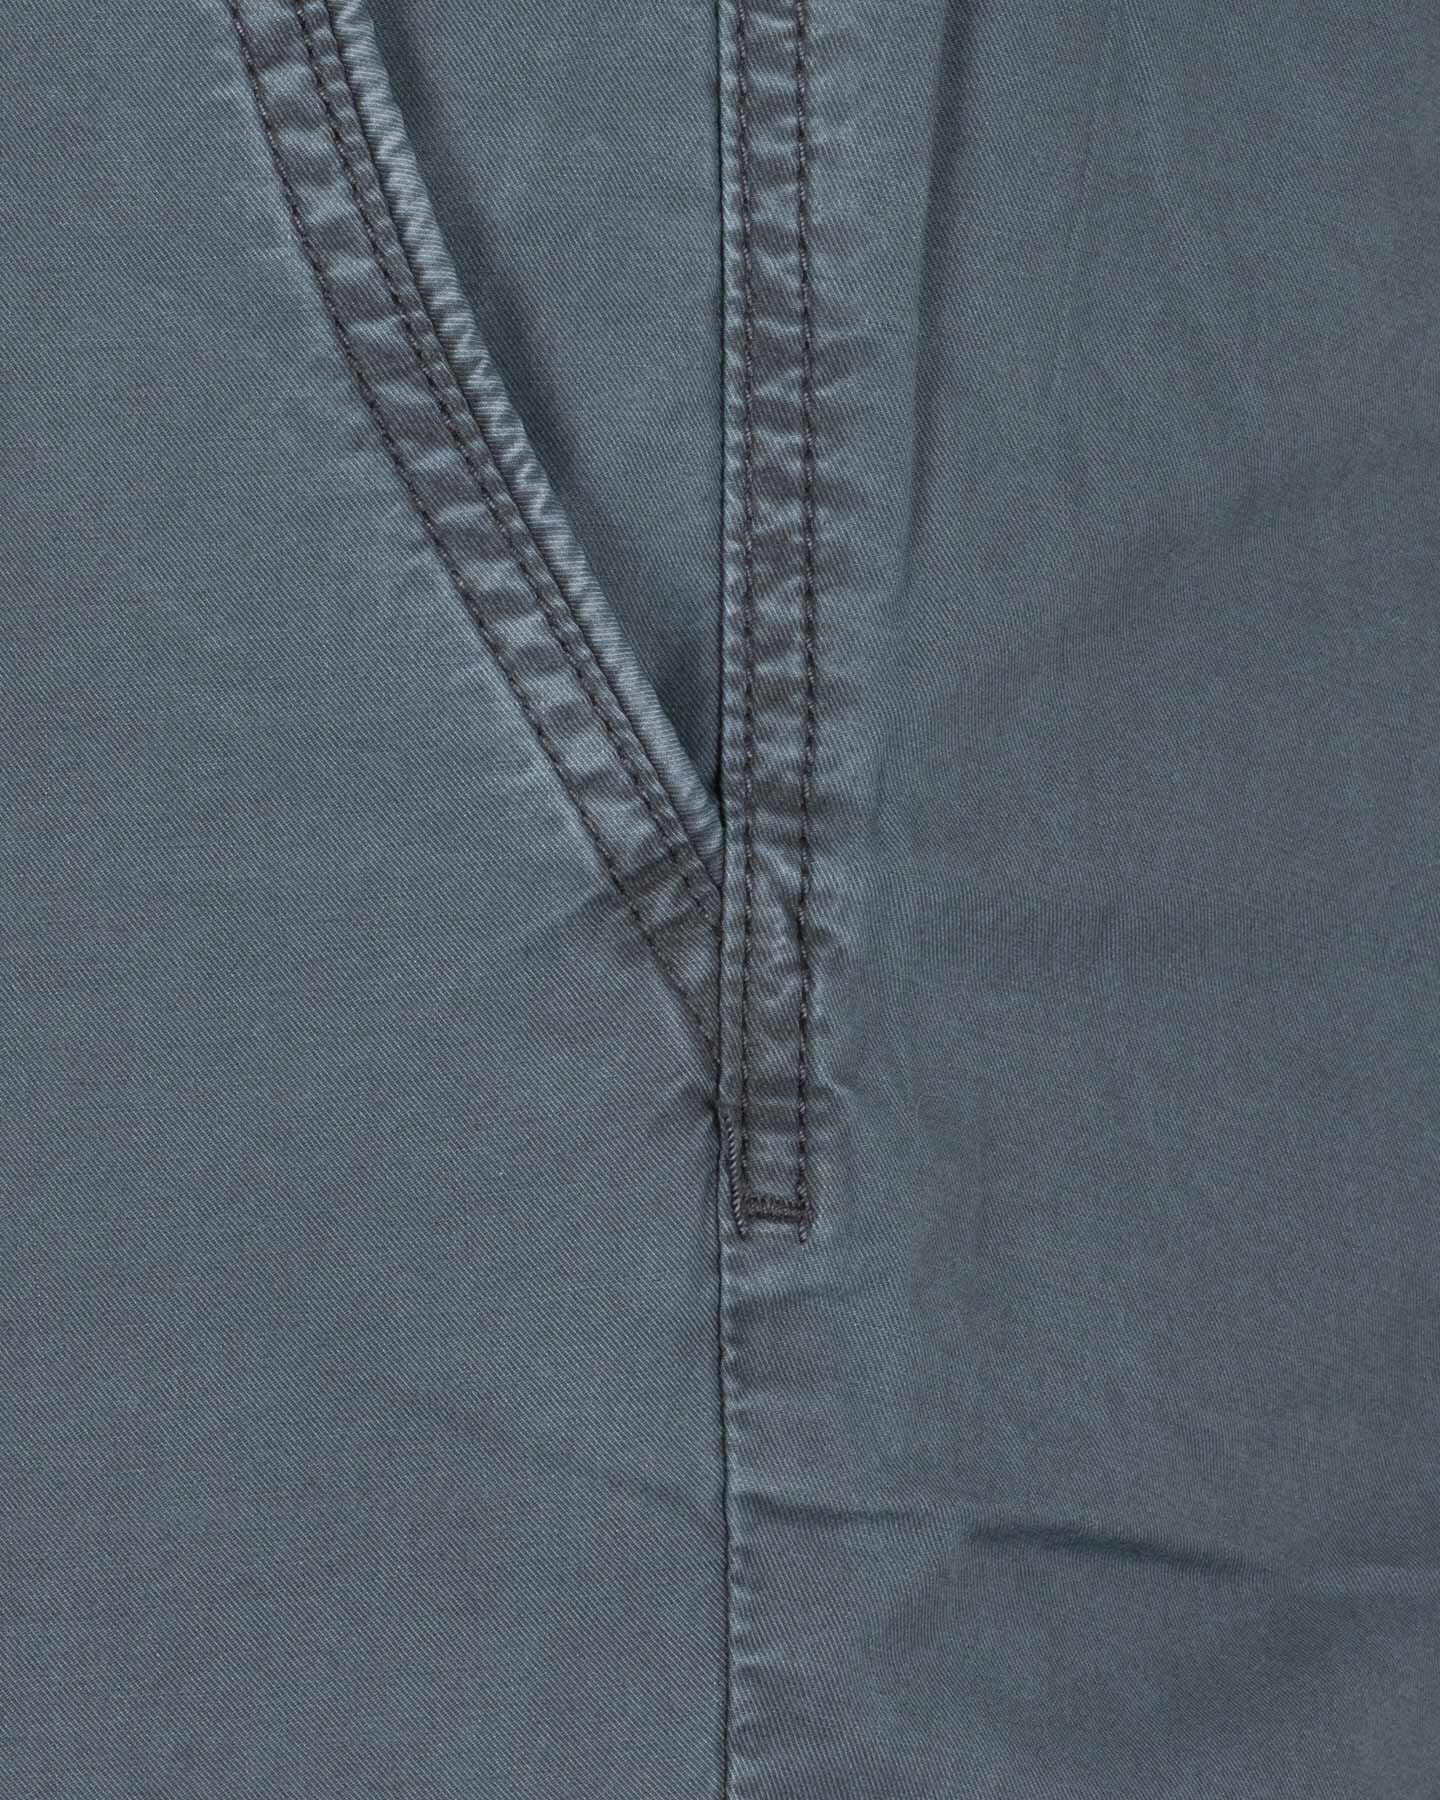  Pantalone BEST COMPANY COTTON LINE M S4131668|519|44 scatto 2